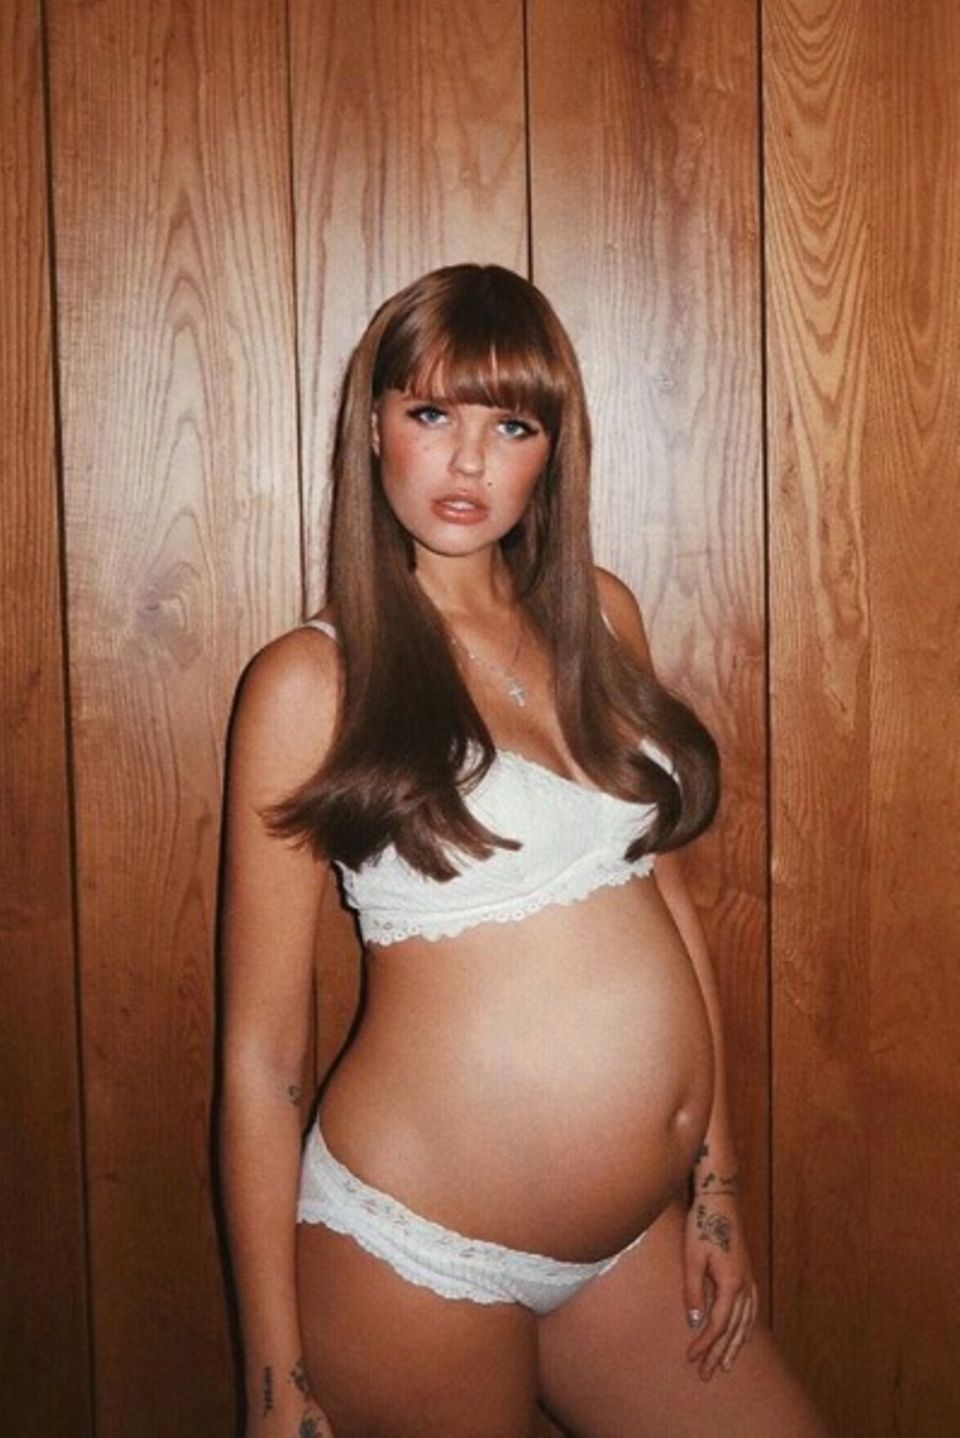 Während ihrer Schwangerschaft beglückte Bonnie Strange ihre Follower immer wieder mit Babybauch-Updates auf Instagram. Am 21. Mai 2018 erblickt dann Töchterchen Goldie Venus das Licht der Welt. 